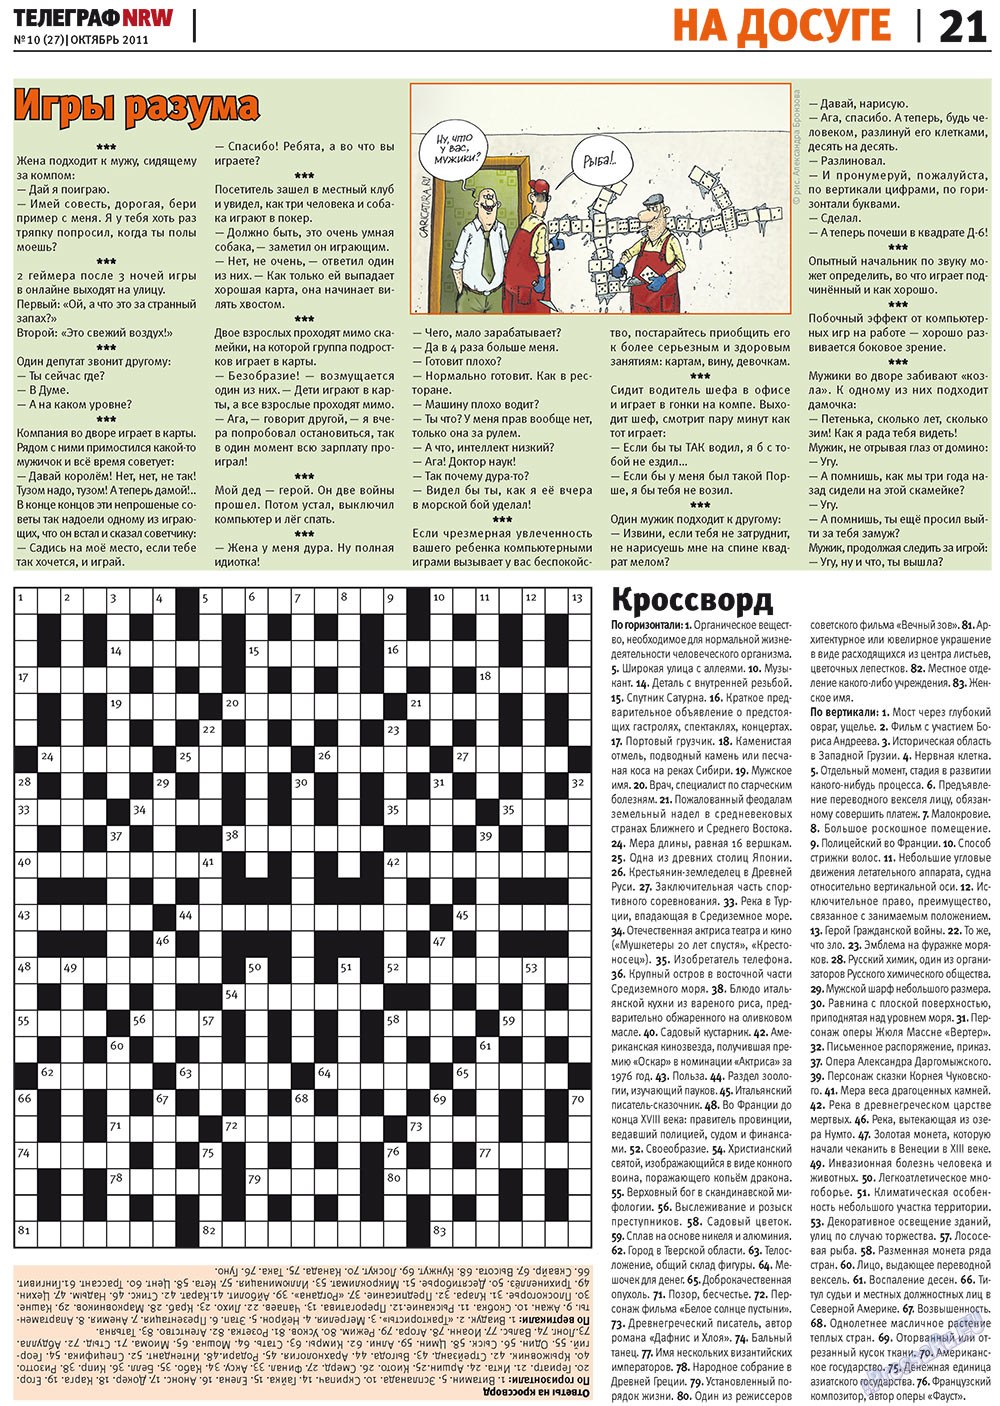 Телеграф NRW (газета). 2011 год, номер 10, стр. 21